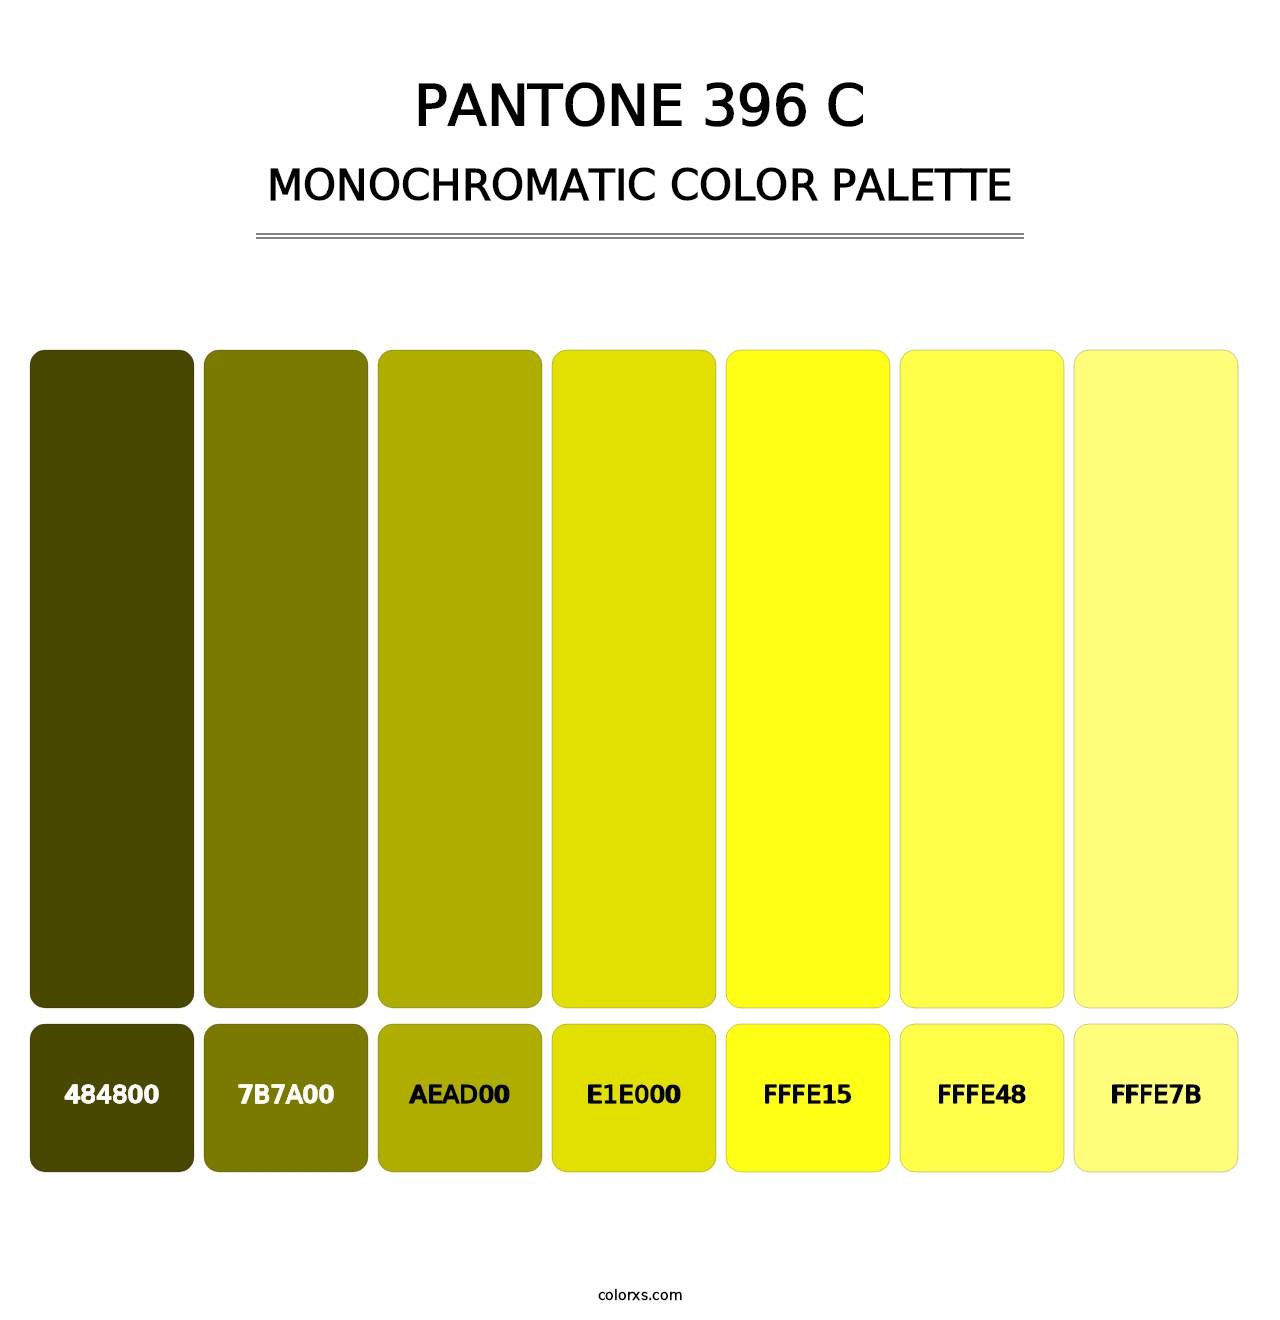 PANTONE 396 C - Monochromatic Color Palette